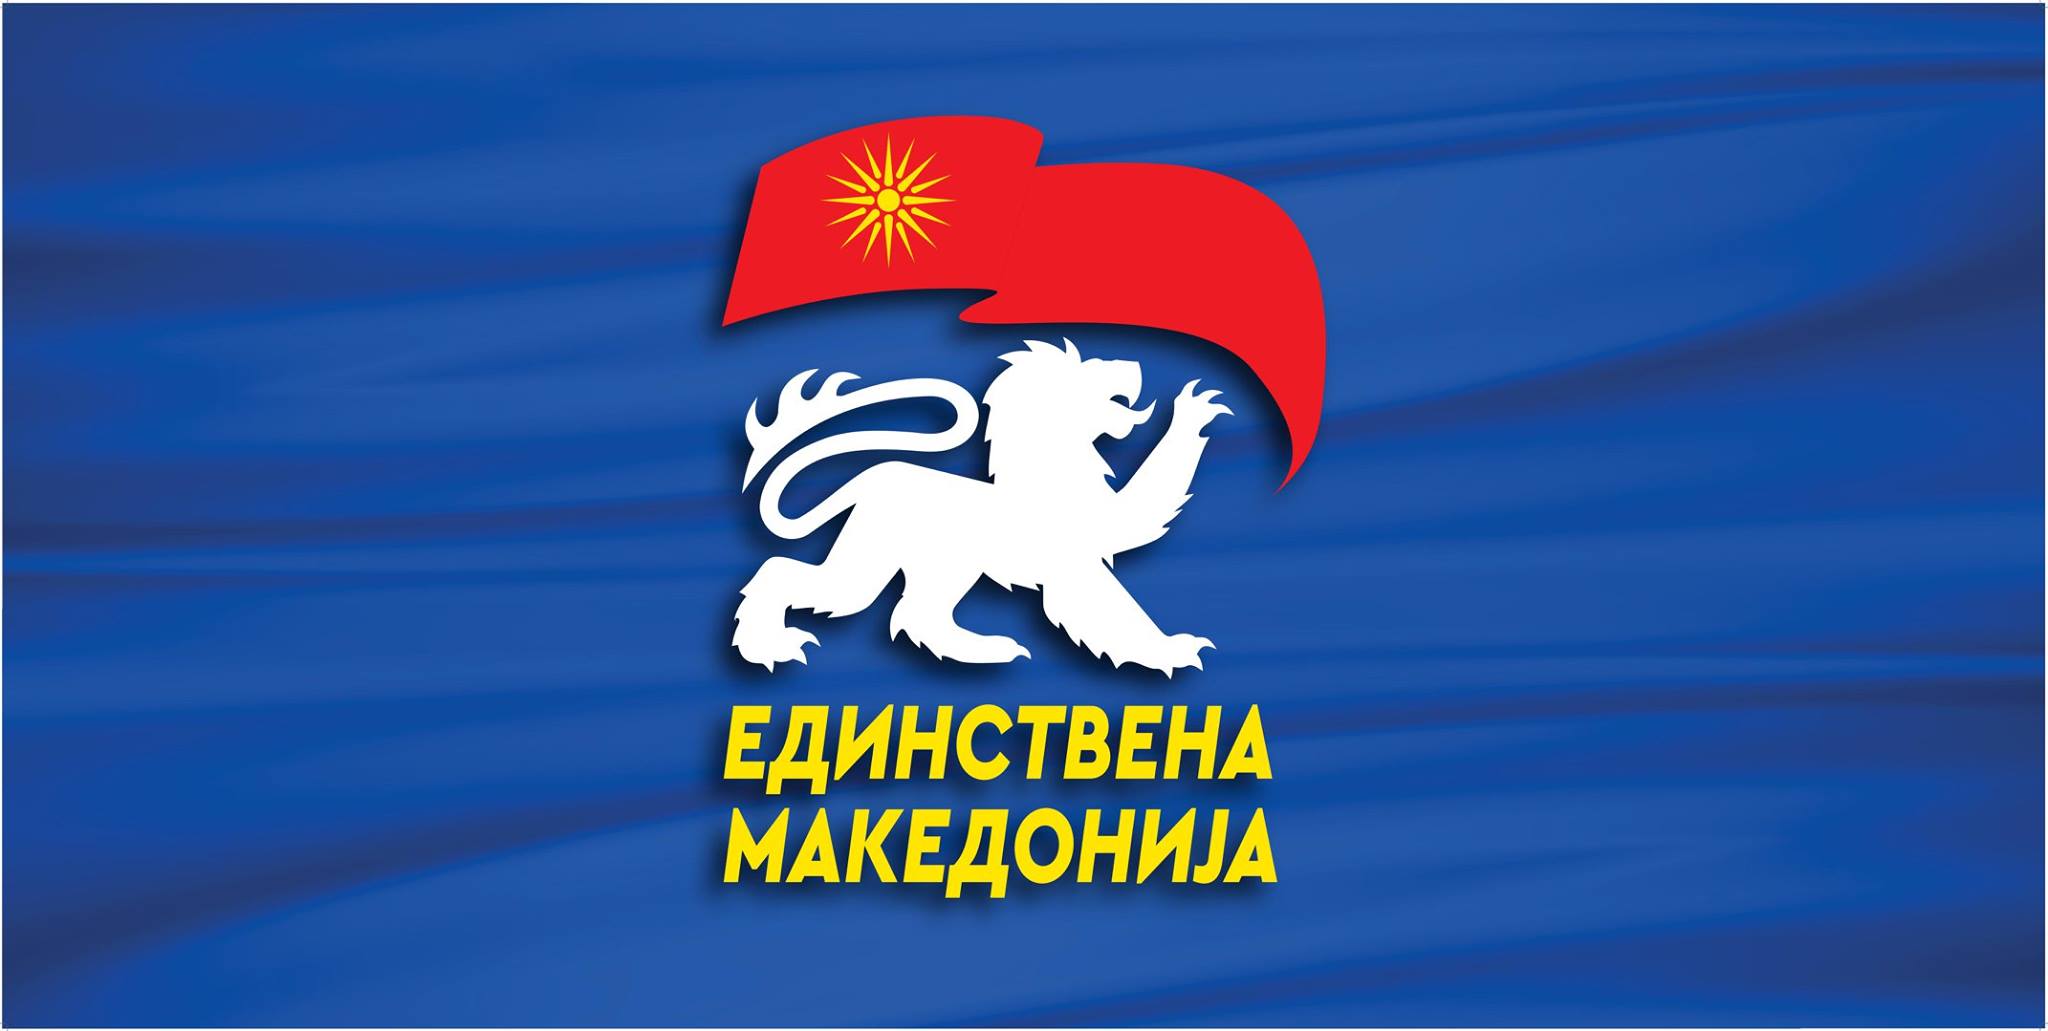 Единствена Македонија до Ковачевски: Те шамараат на рати од Бугарија, повлечи се од антимакедонските договарања со Бугарија 